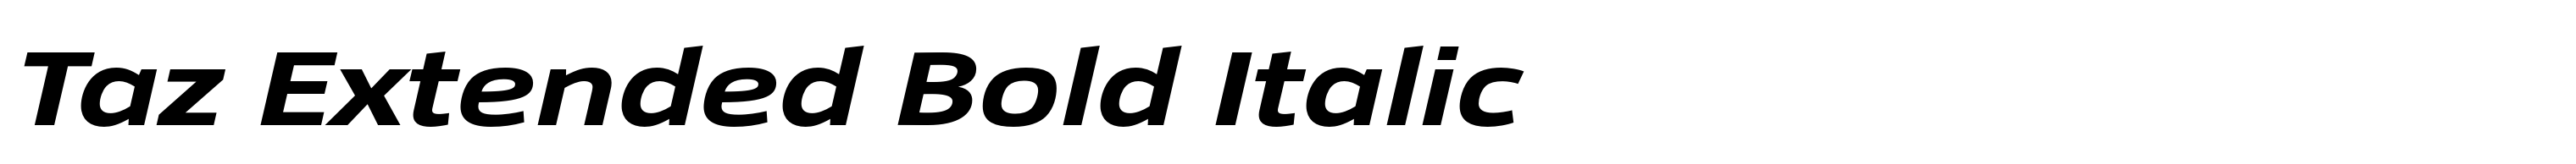 Taz Extended Bold Italic